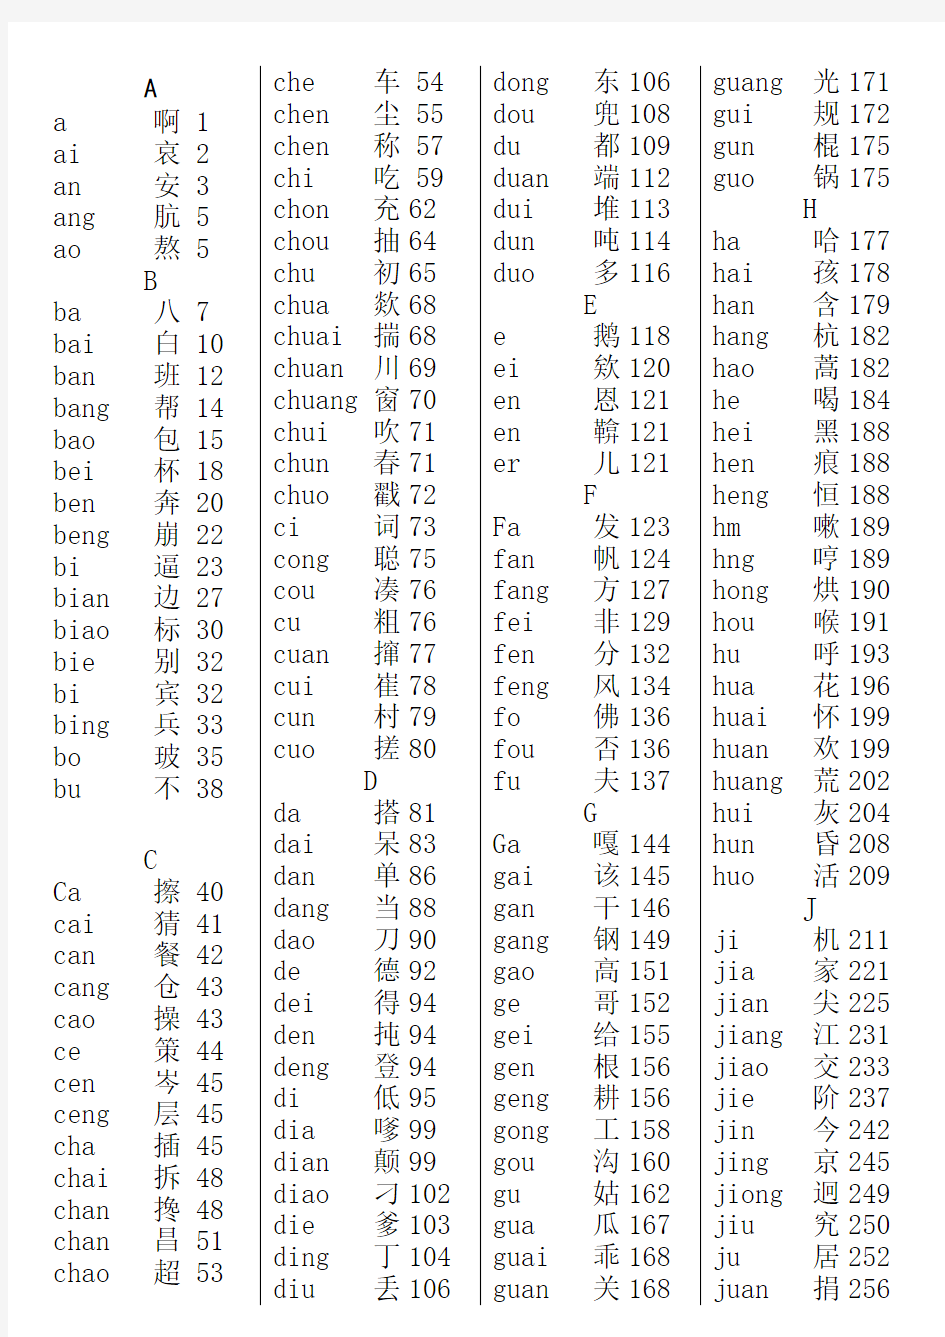 新华字典汉语拼音音节索引表